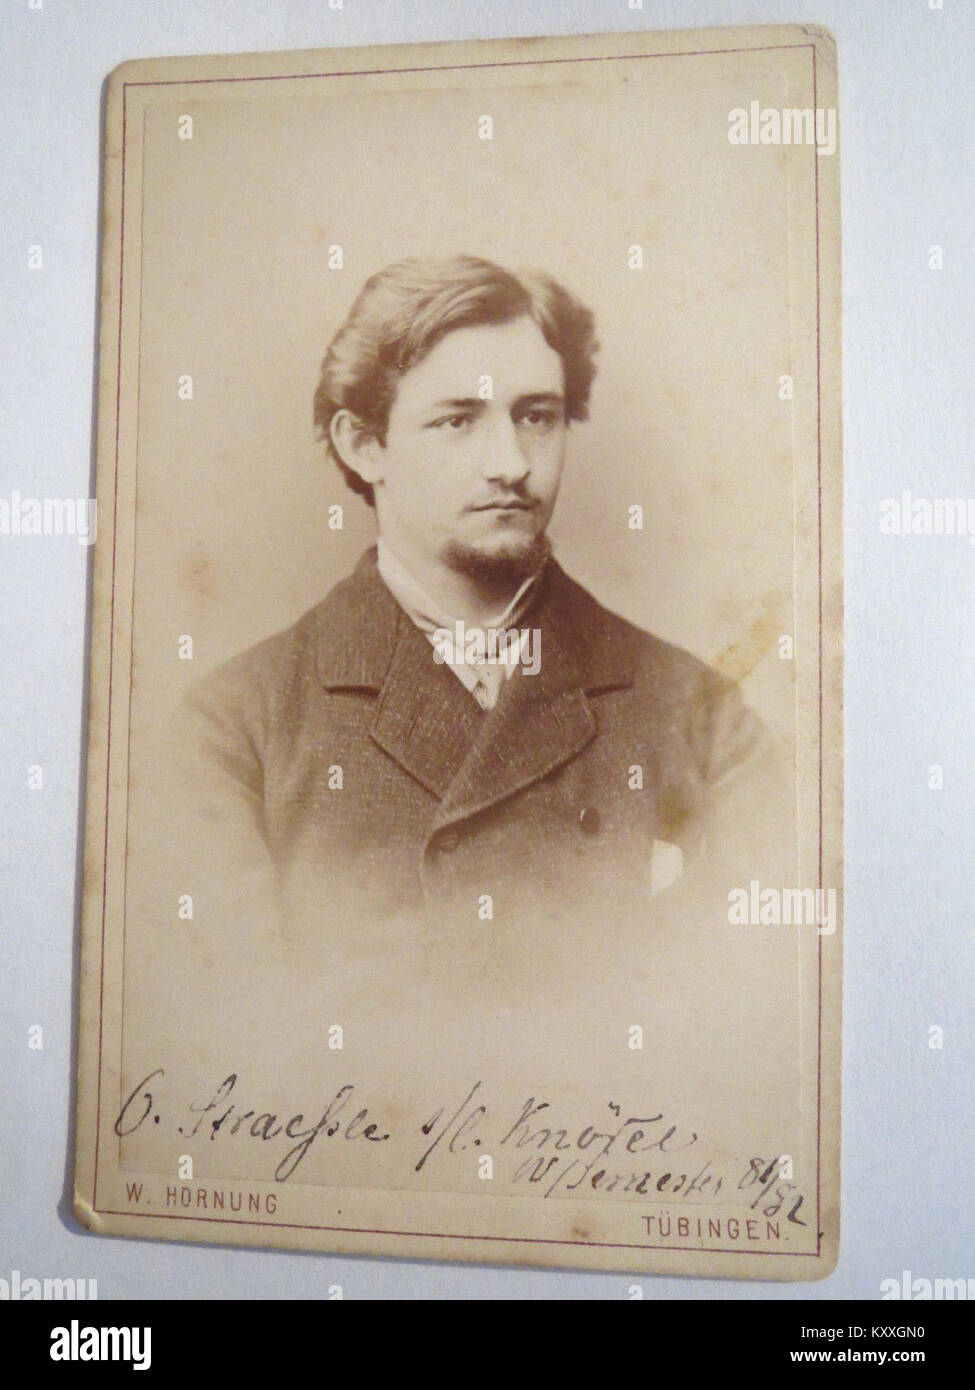 G. Straehle seinem lieben Knödel, Wintersemester 1881-82, CDV von W. Hornung, Tübingen Stock Photo